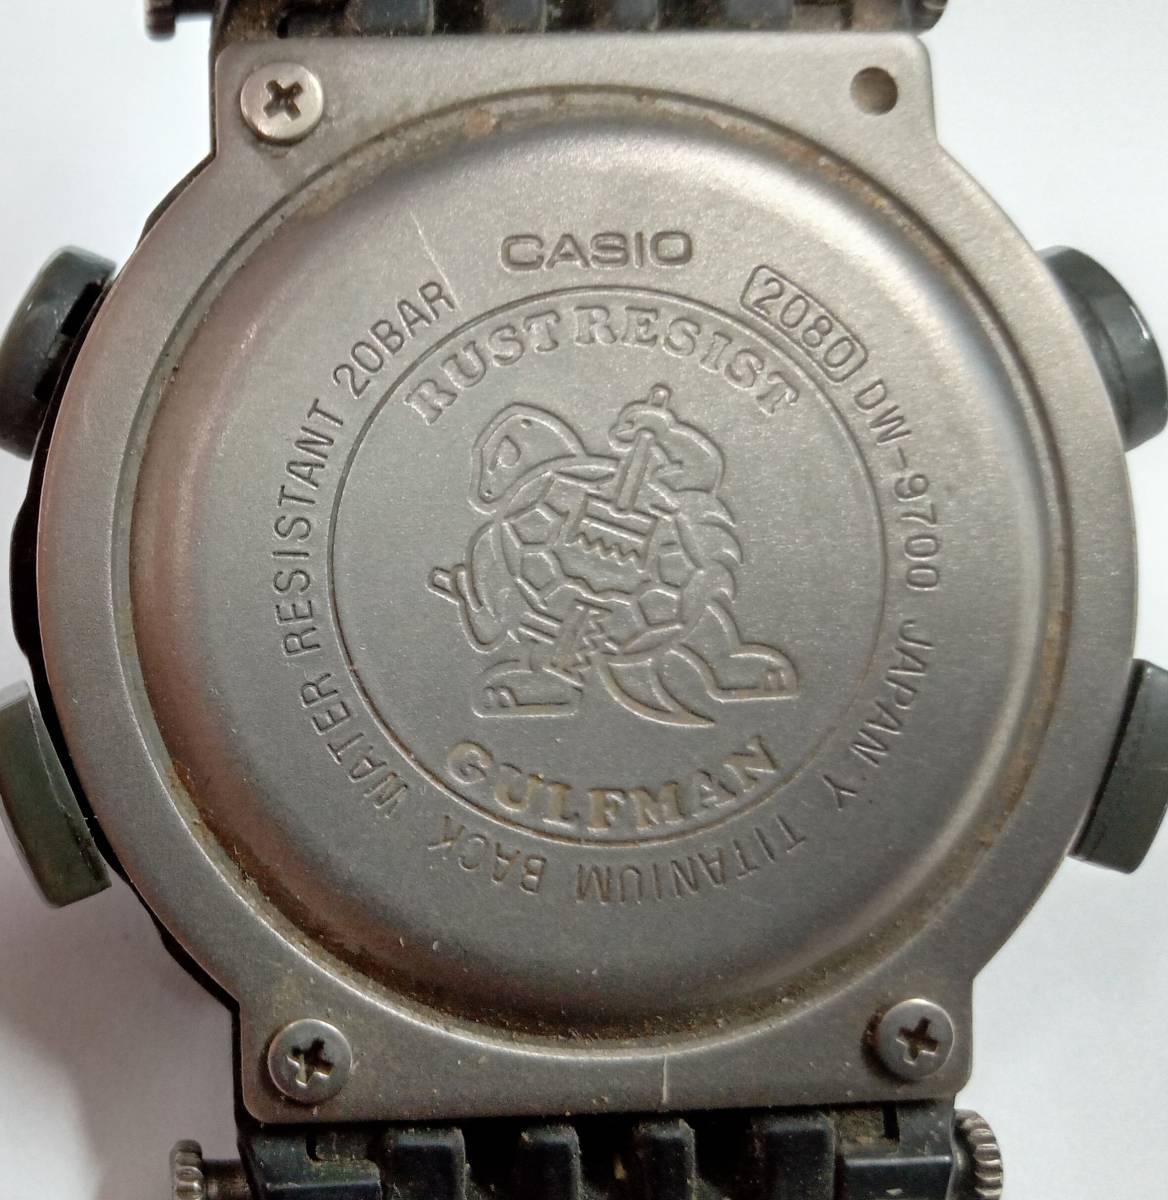  продаю как нерабочий    на работоспособность не проверялось  CASIO  casio   G-SHOCK ... аммортизаторы  DW-9700  кварцевый   наручные часы   кейс  нет   оборотная сторона  крышка  1шт.   винт  нет 